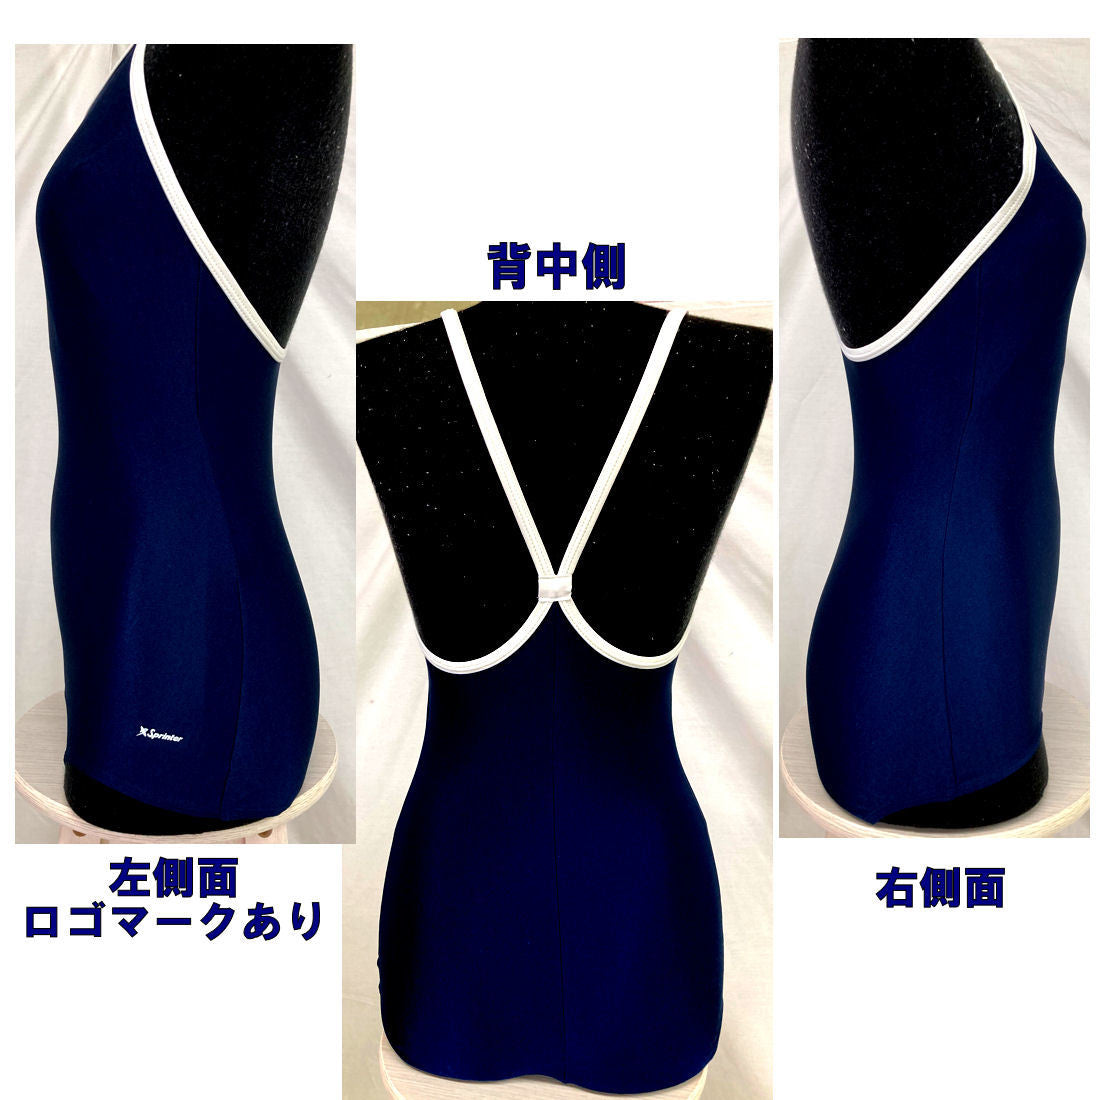 日本製 スプリンター スクール水着 型番 290 女の子 120から150 サイズ